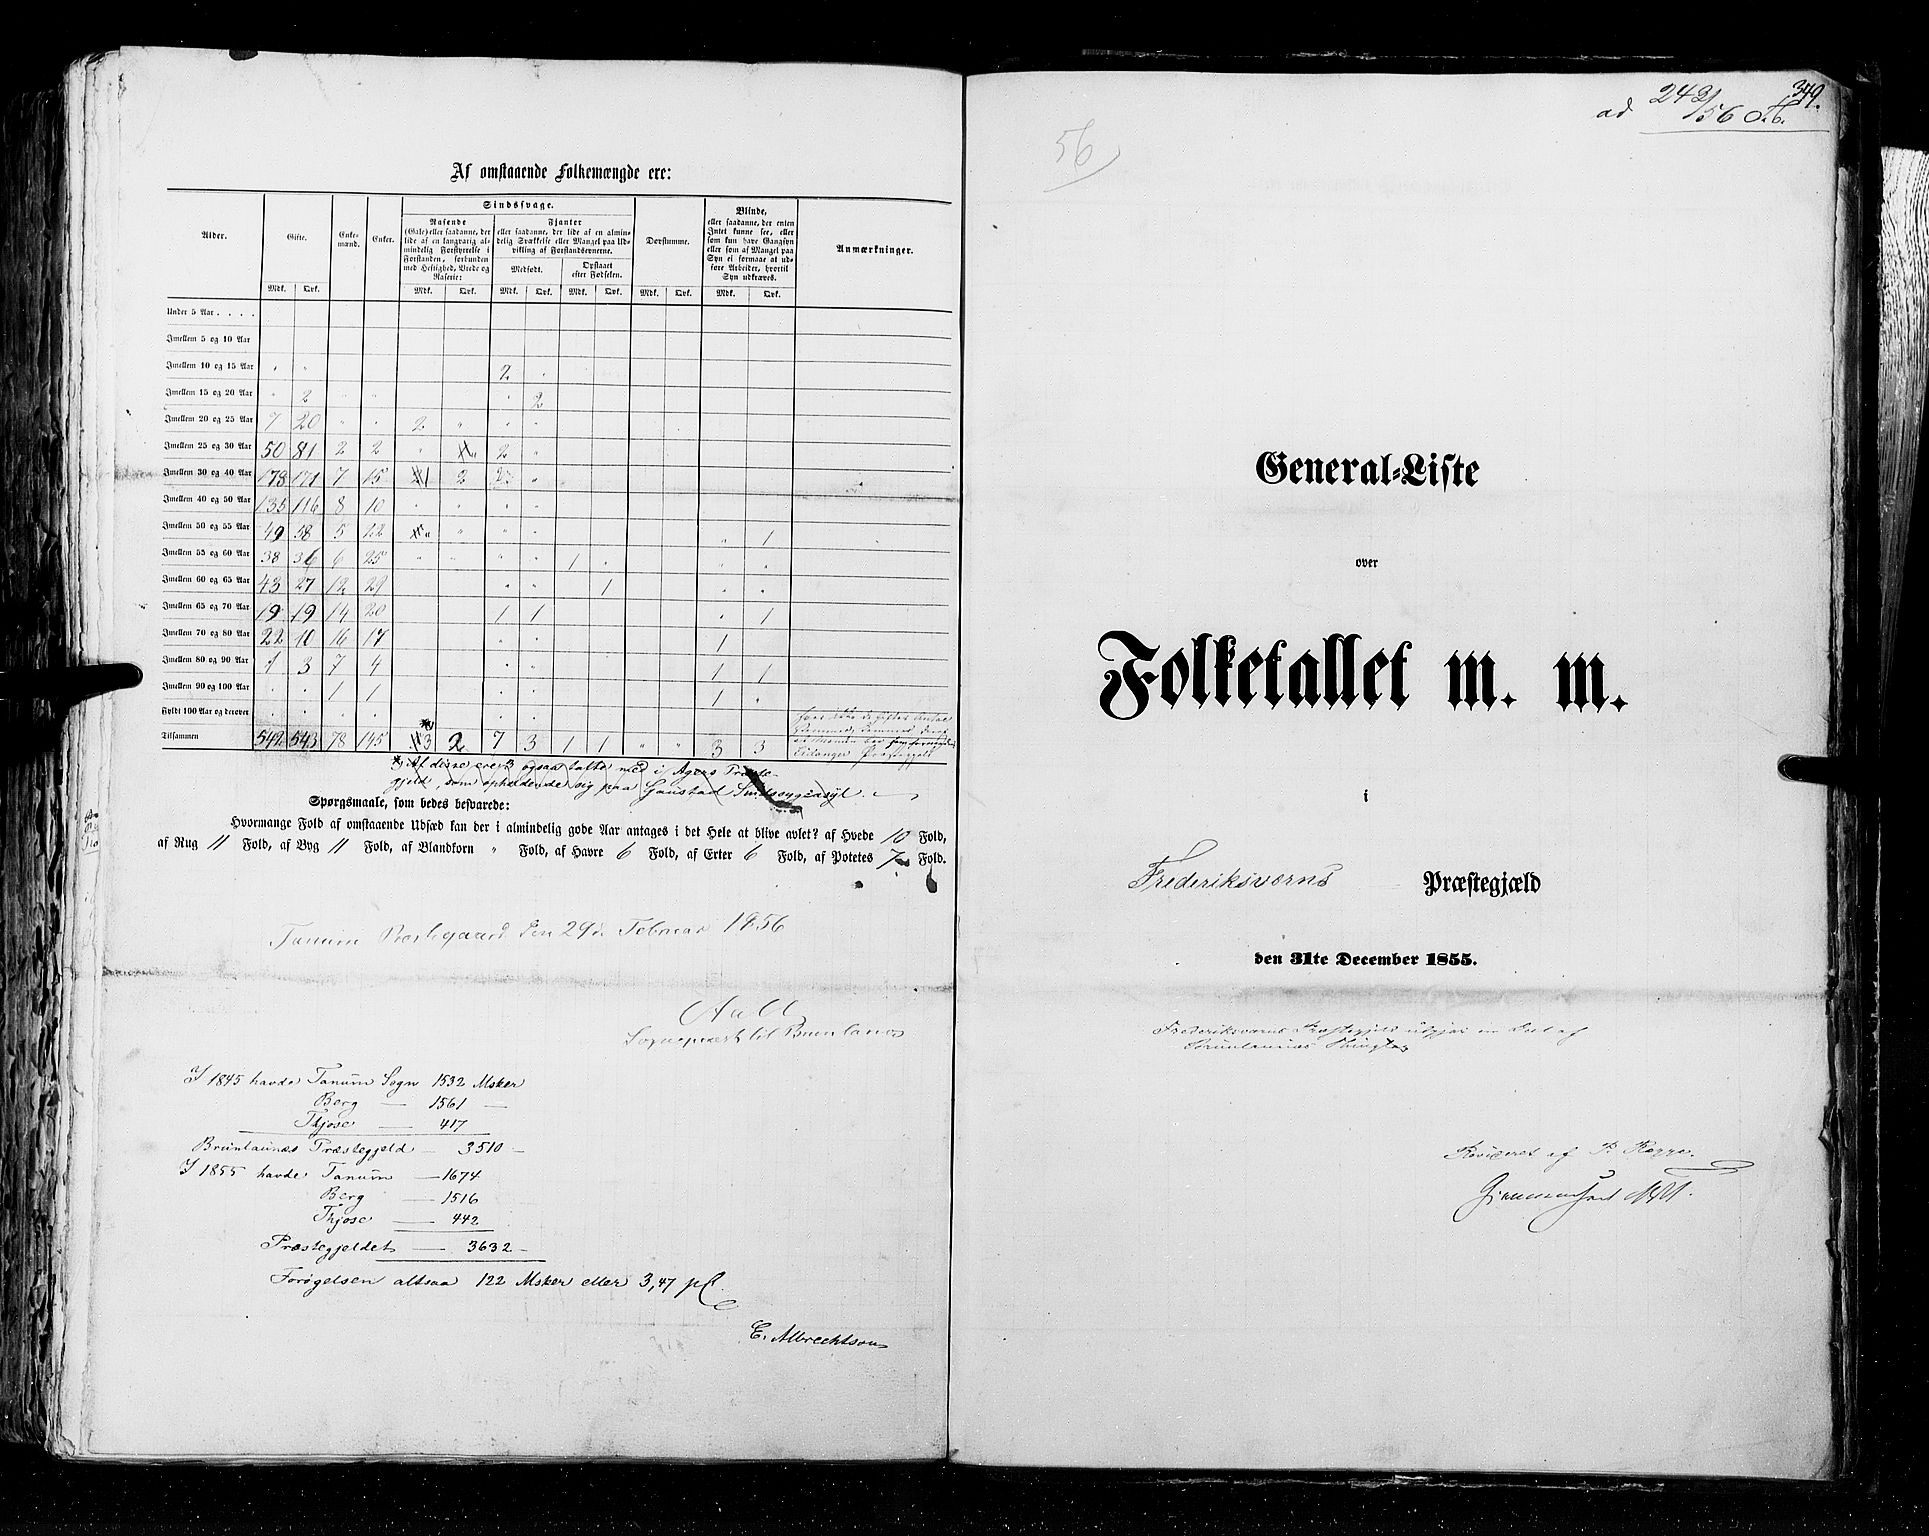 RA, Folketellingen 1855, bind 2: Kristians amt, Buskerud amt og Jarlsberg og Larvik amt, 1855, s. 349